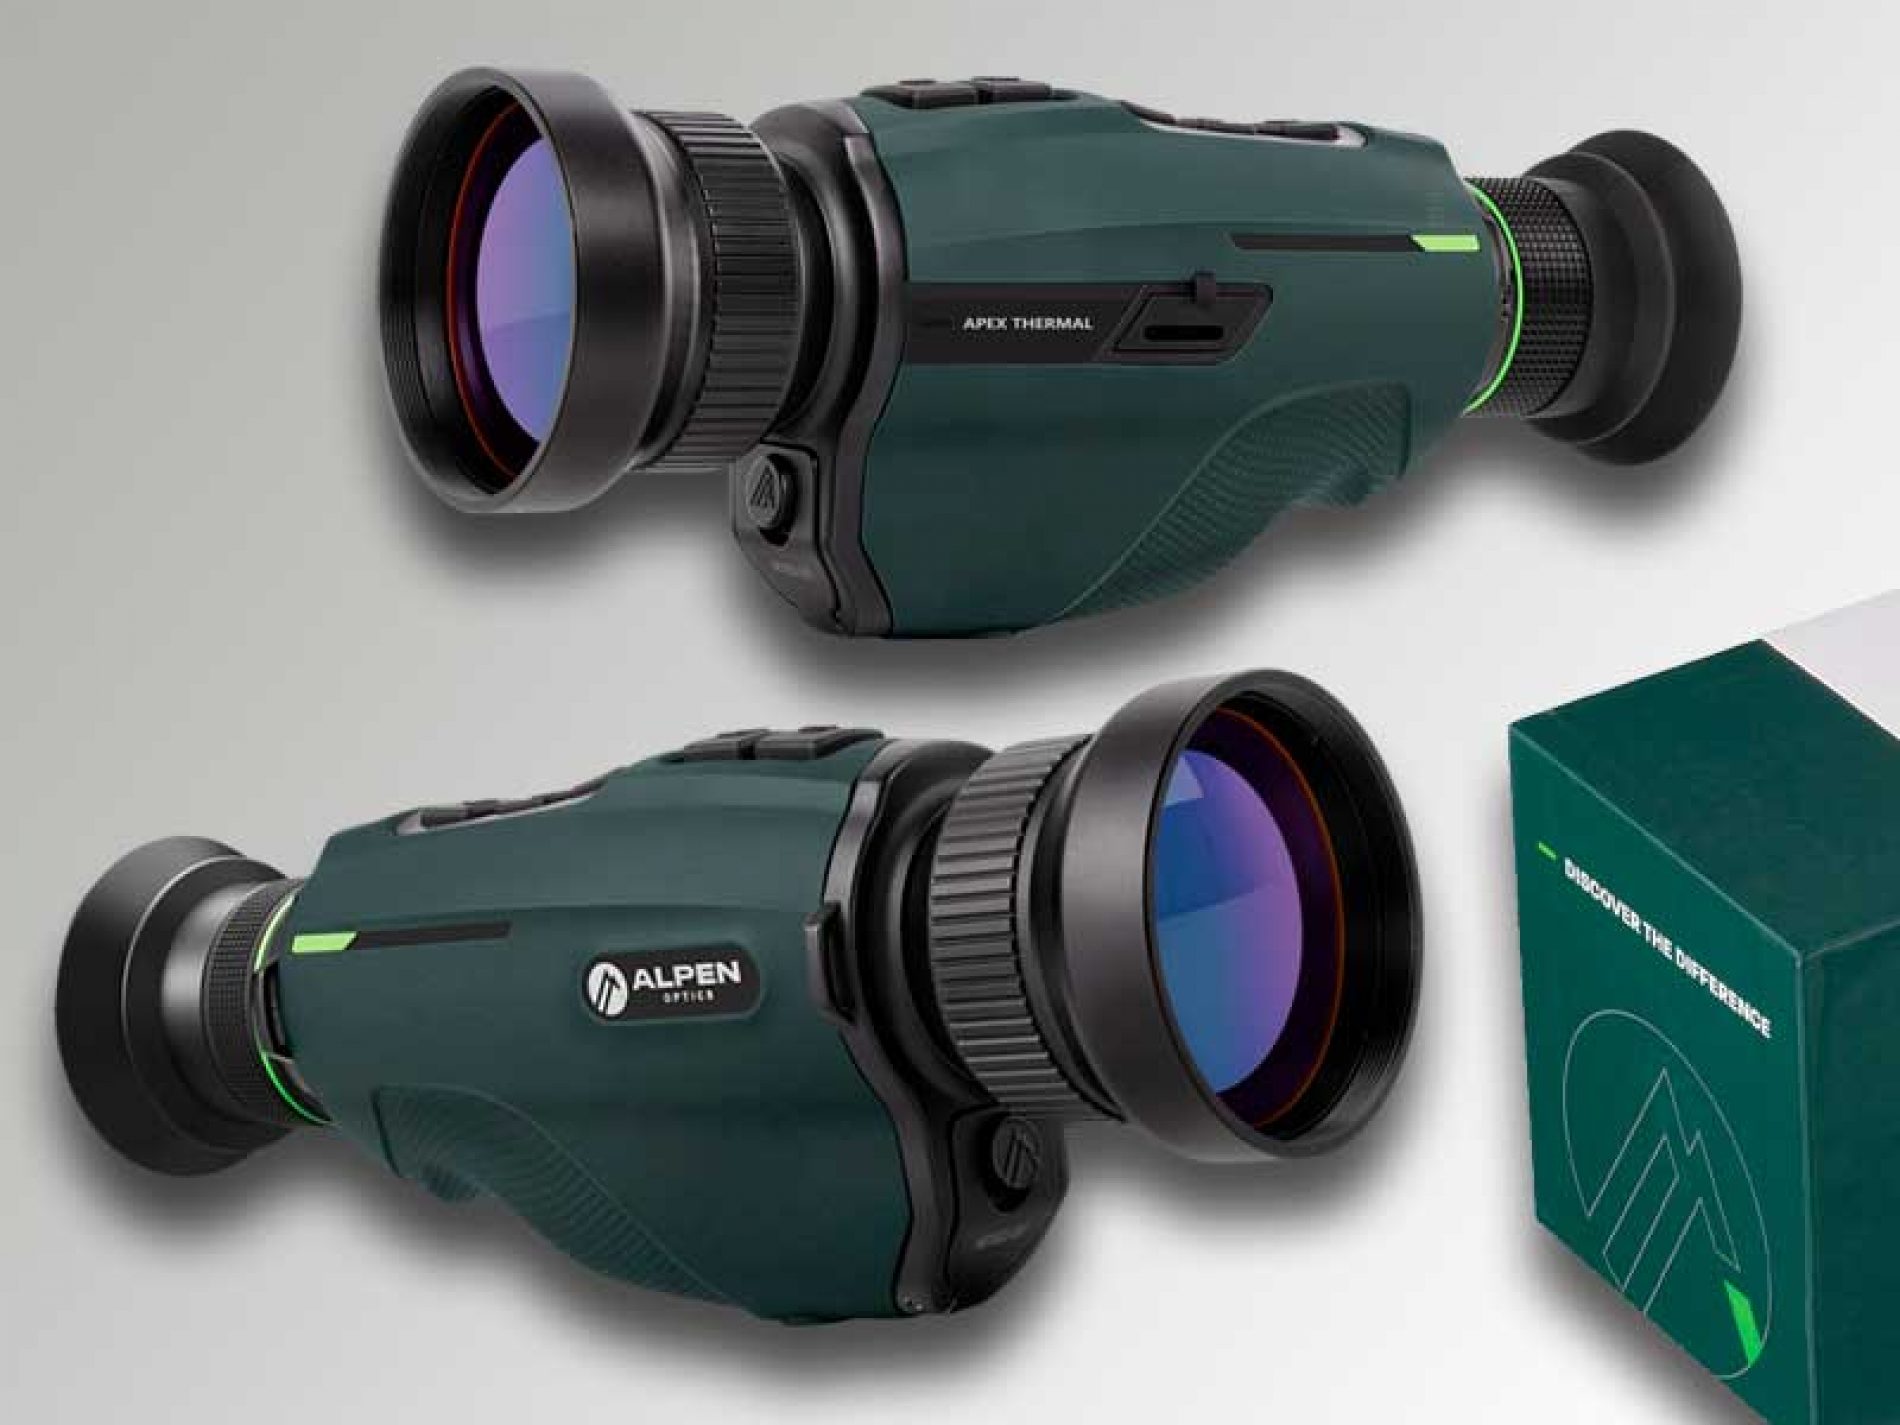 El monocular térmico Alpen Apex 54mm ofrece una nueva manera de observar la caza y el mundo